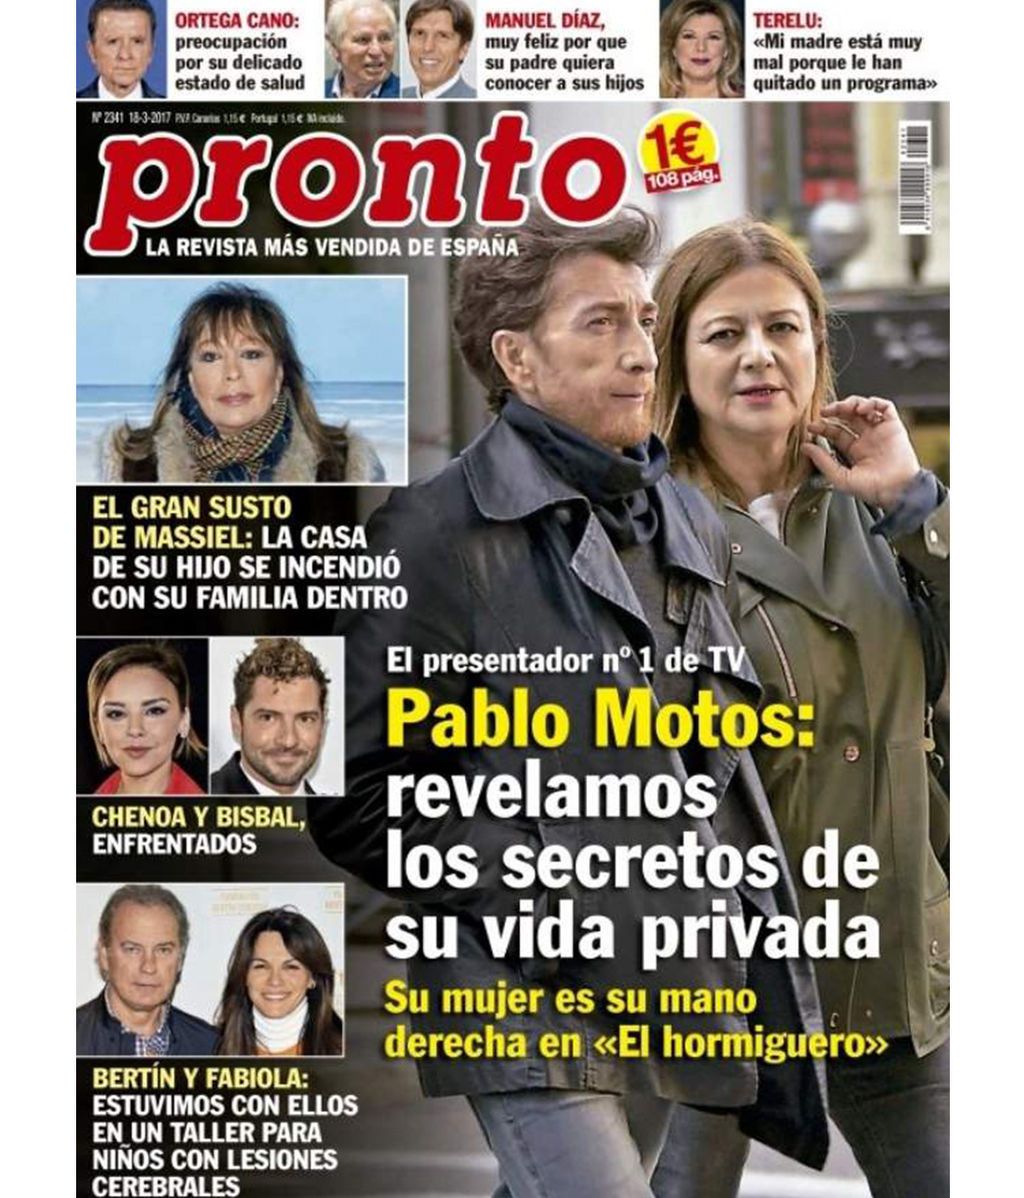 Pablo Motos y su mujer